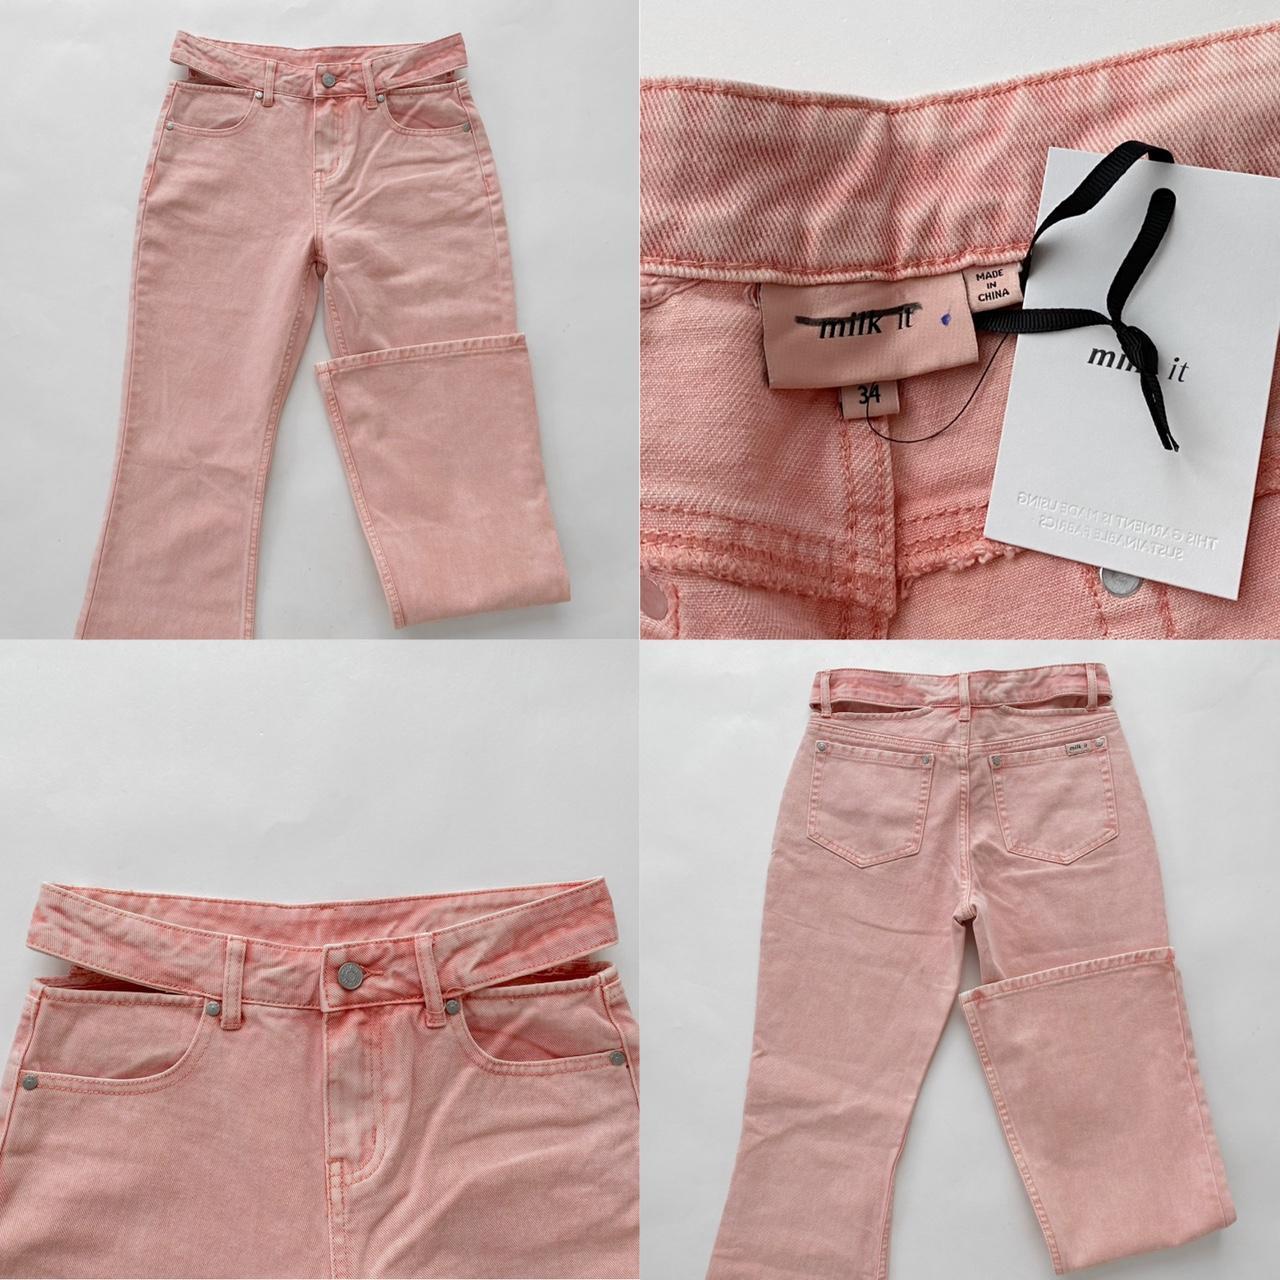 Milk It Women's Pink Jeans (4)